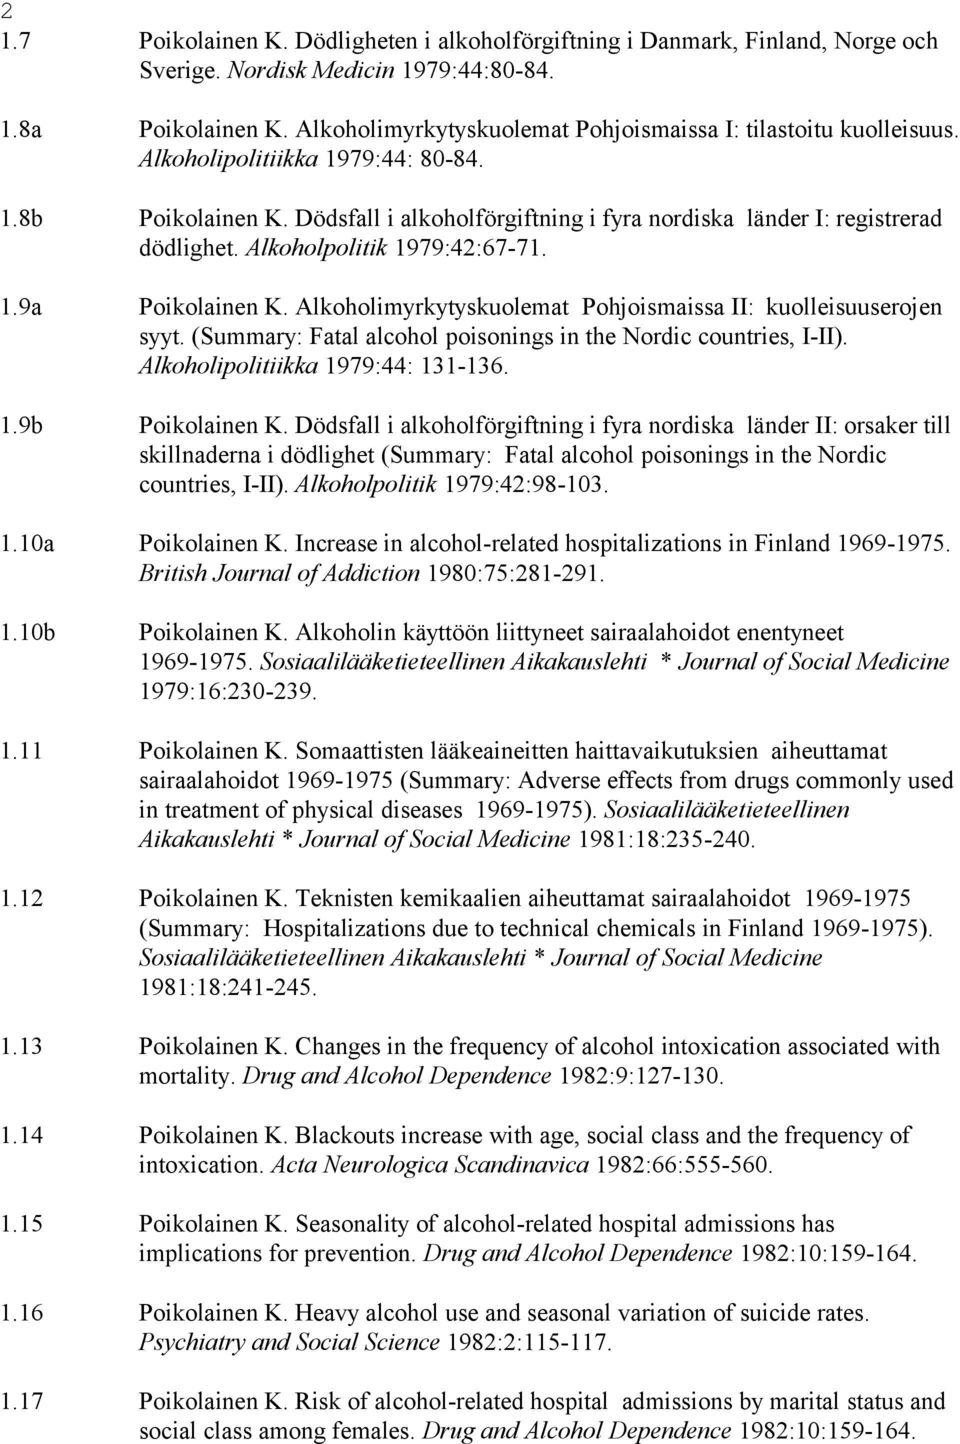 Alkoholpolitik 1979:42:67-71. 1.9a Poikolainen K. Alkoholimyrkytyskuolemat Pohjoismaissa II: kuolleisuuserojen syyt. (Summary: Fatal alcohol poisonings in the Nordic countries, I-II).